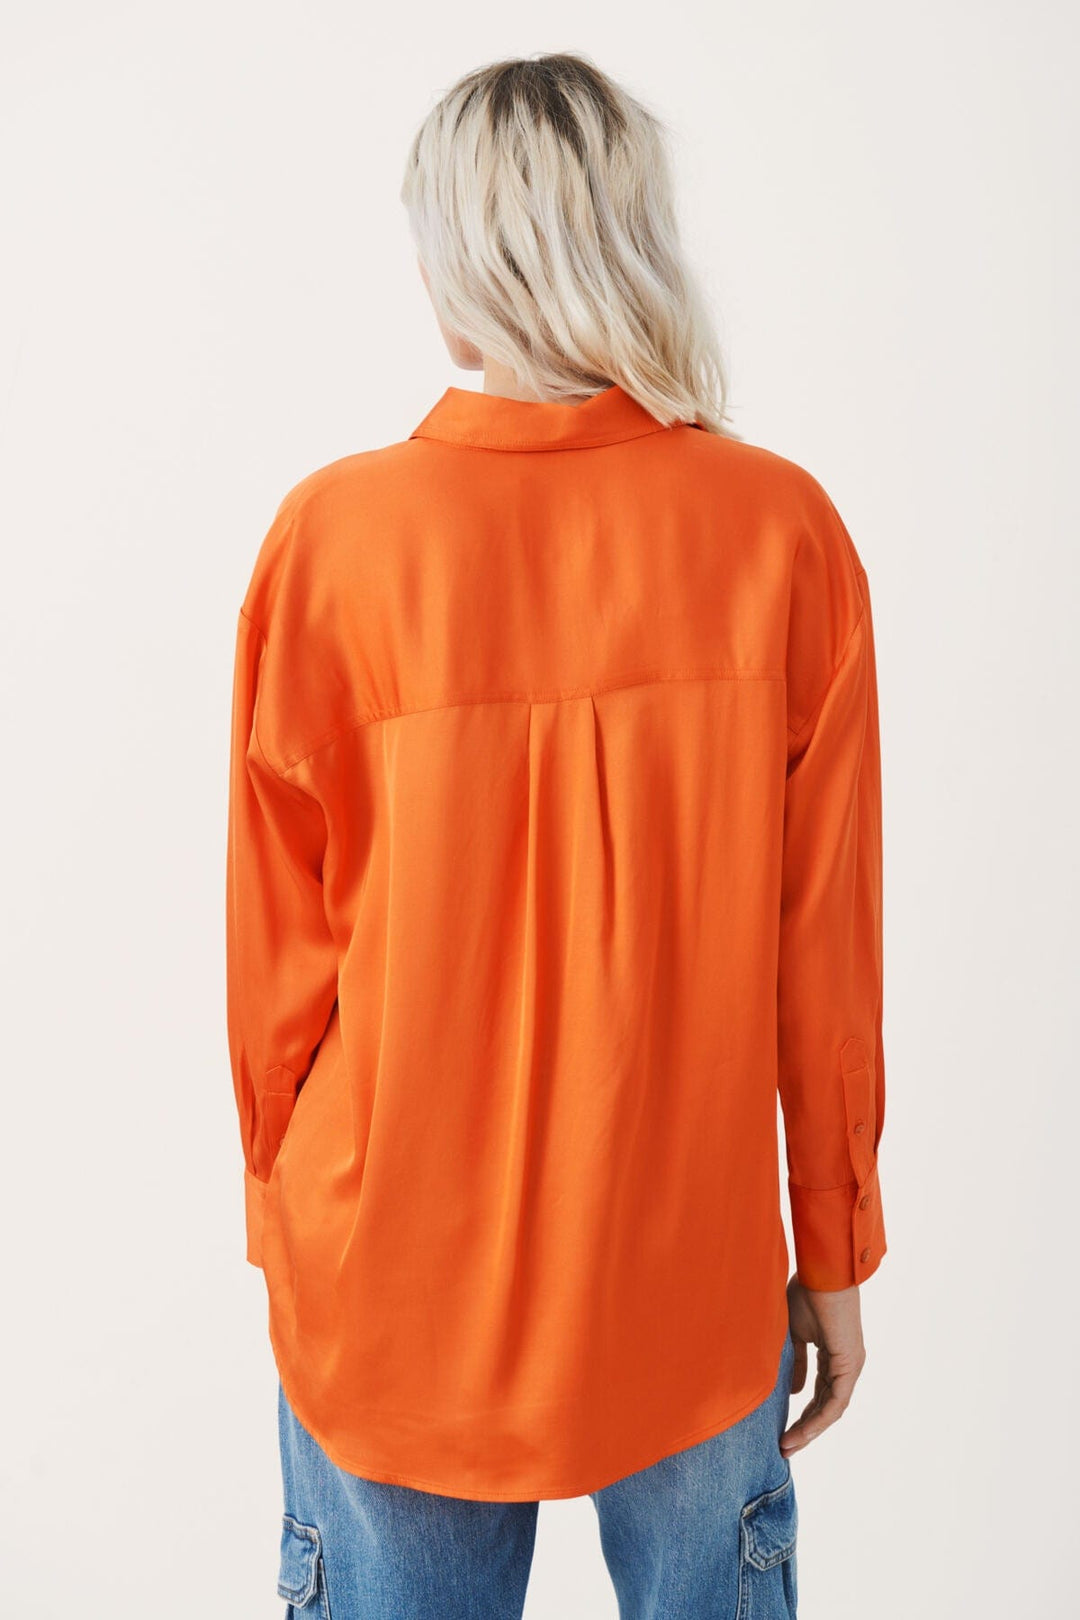 Tikapw Shirt Koi | Skjorter og bluser | Smuk - Dameklær på nett